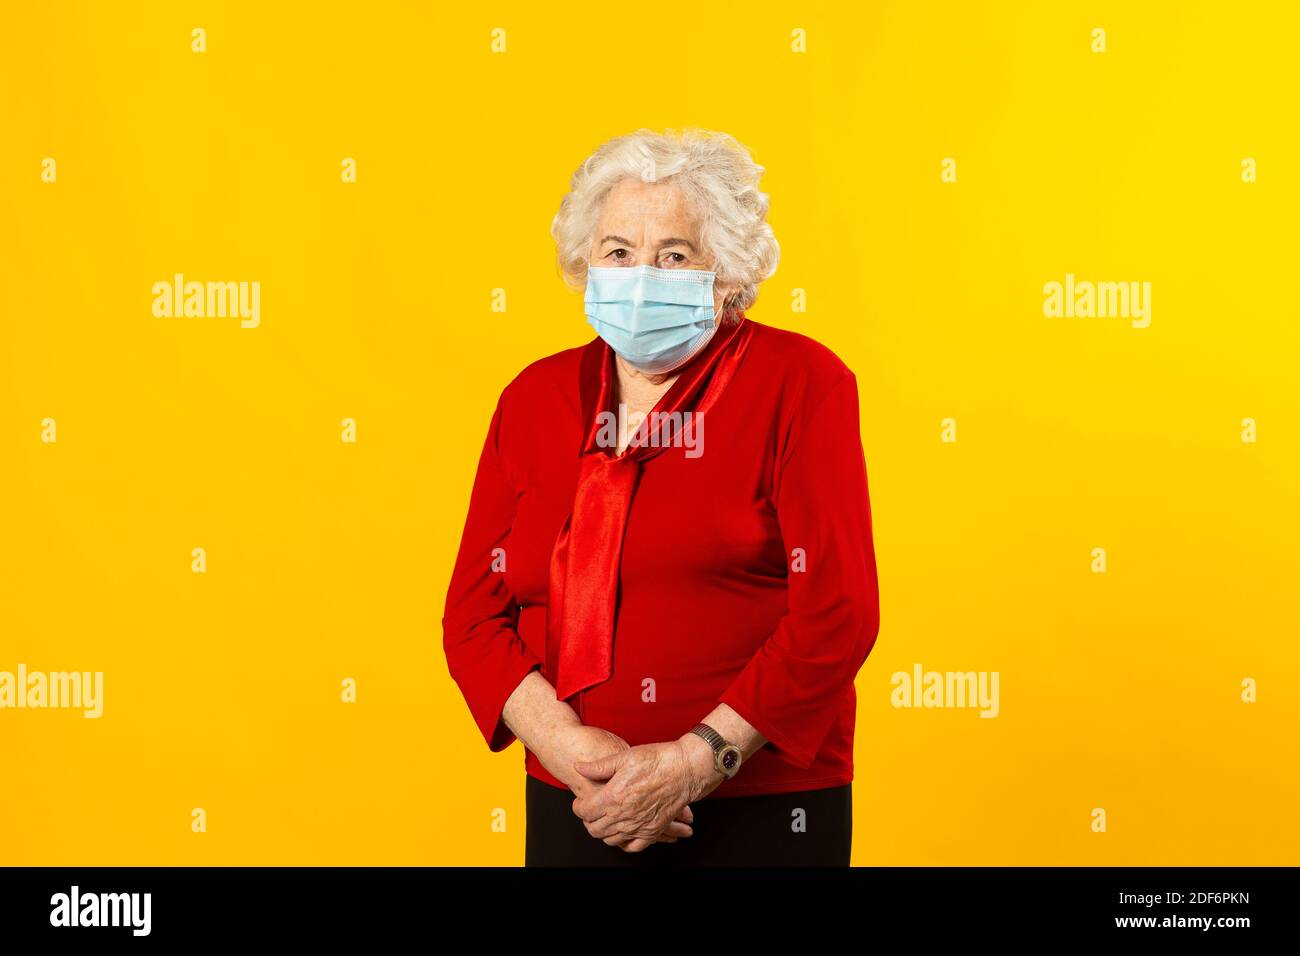 Portrait en studio d'une femme âgée portant une chemise rouge et un masque chirurgical, sur fond jaune Banque D'Images